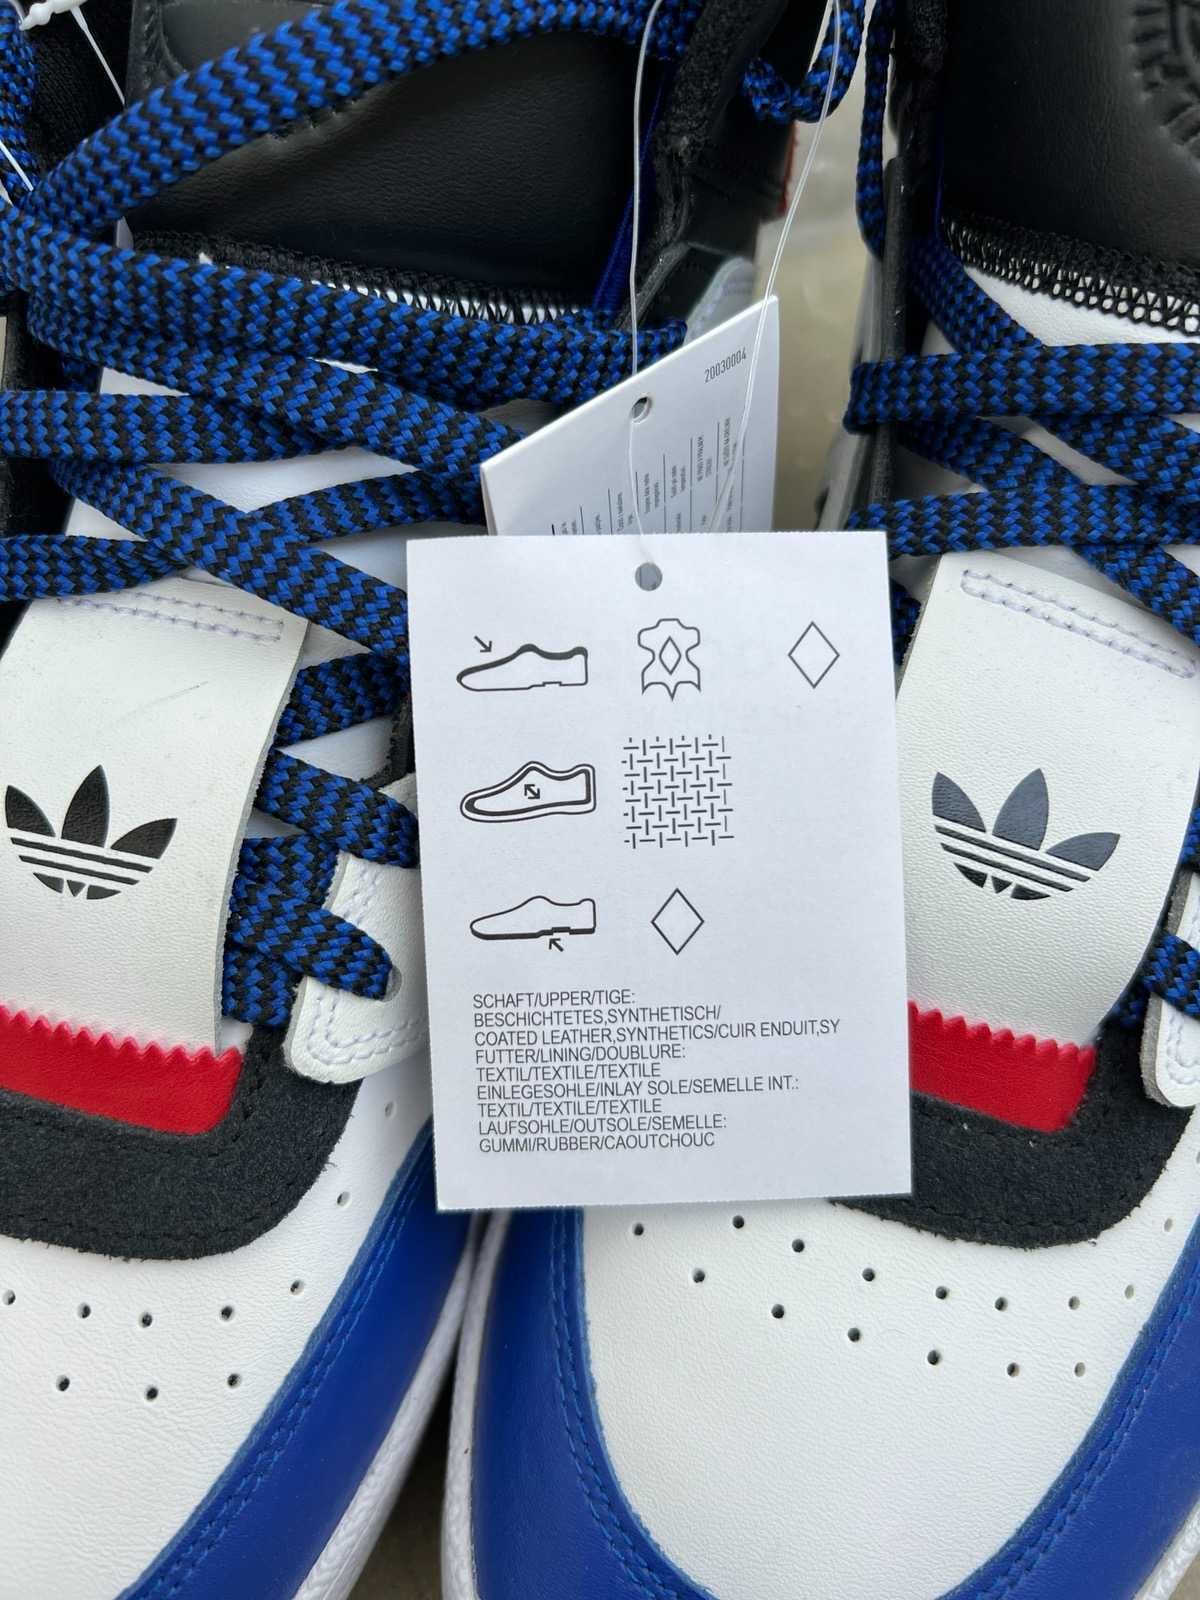 Adidas Drop Ster XL Gr. 42 2/3 Buty Sneakers Nowe